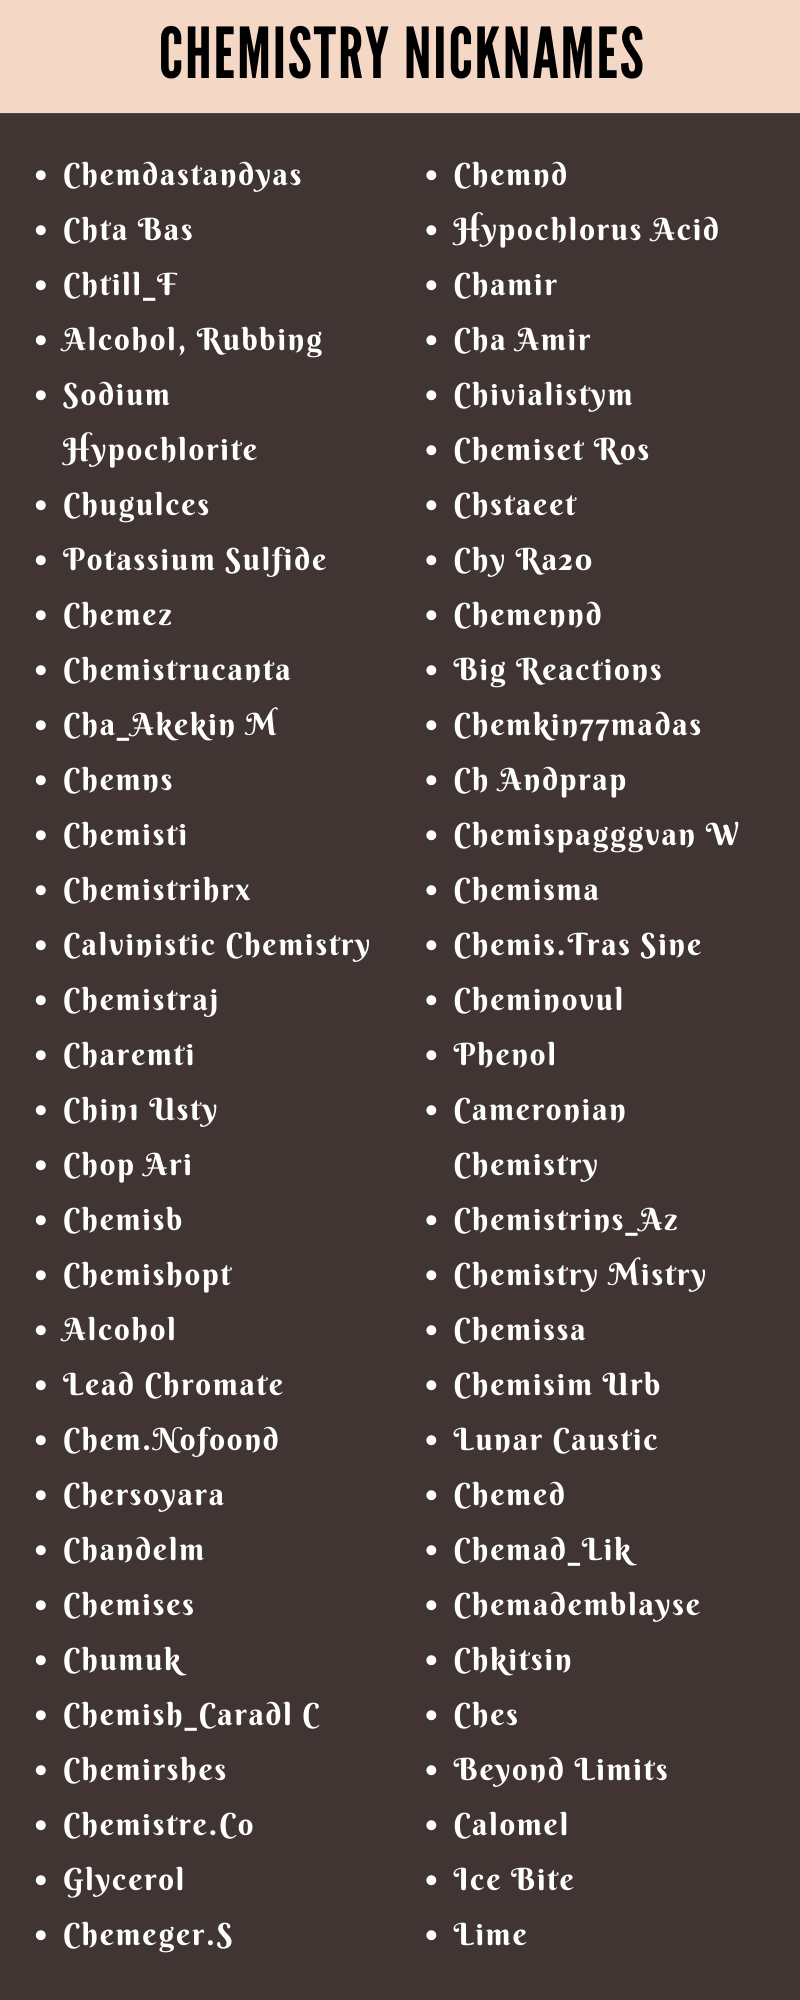 Chemistry Nicknames